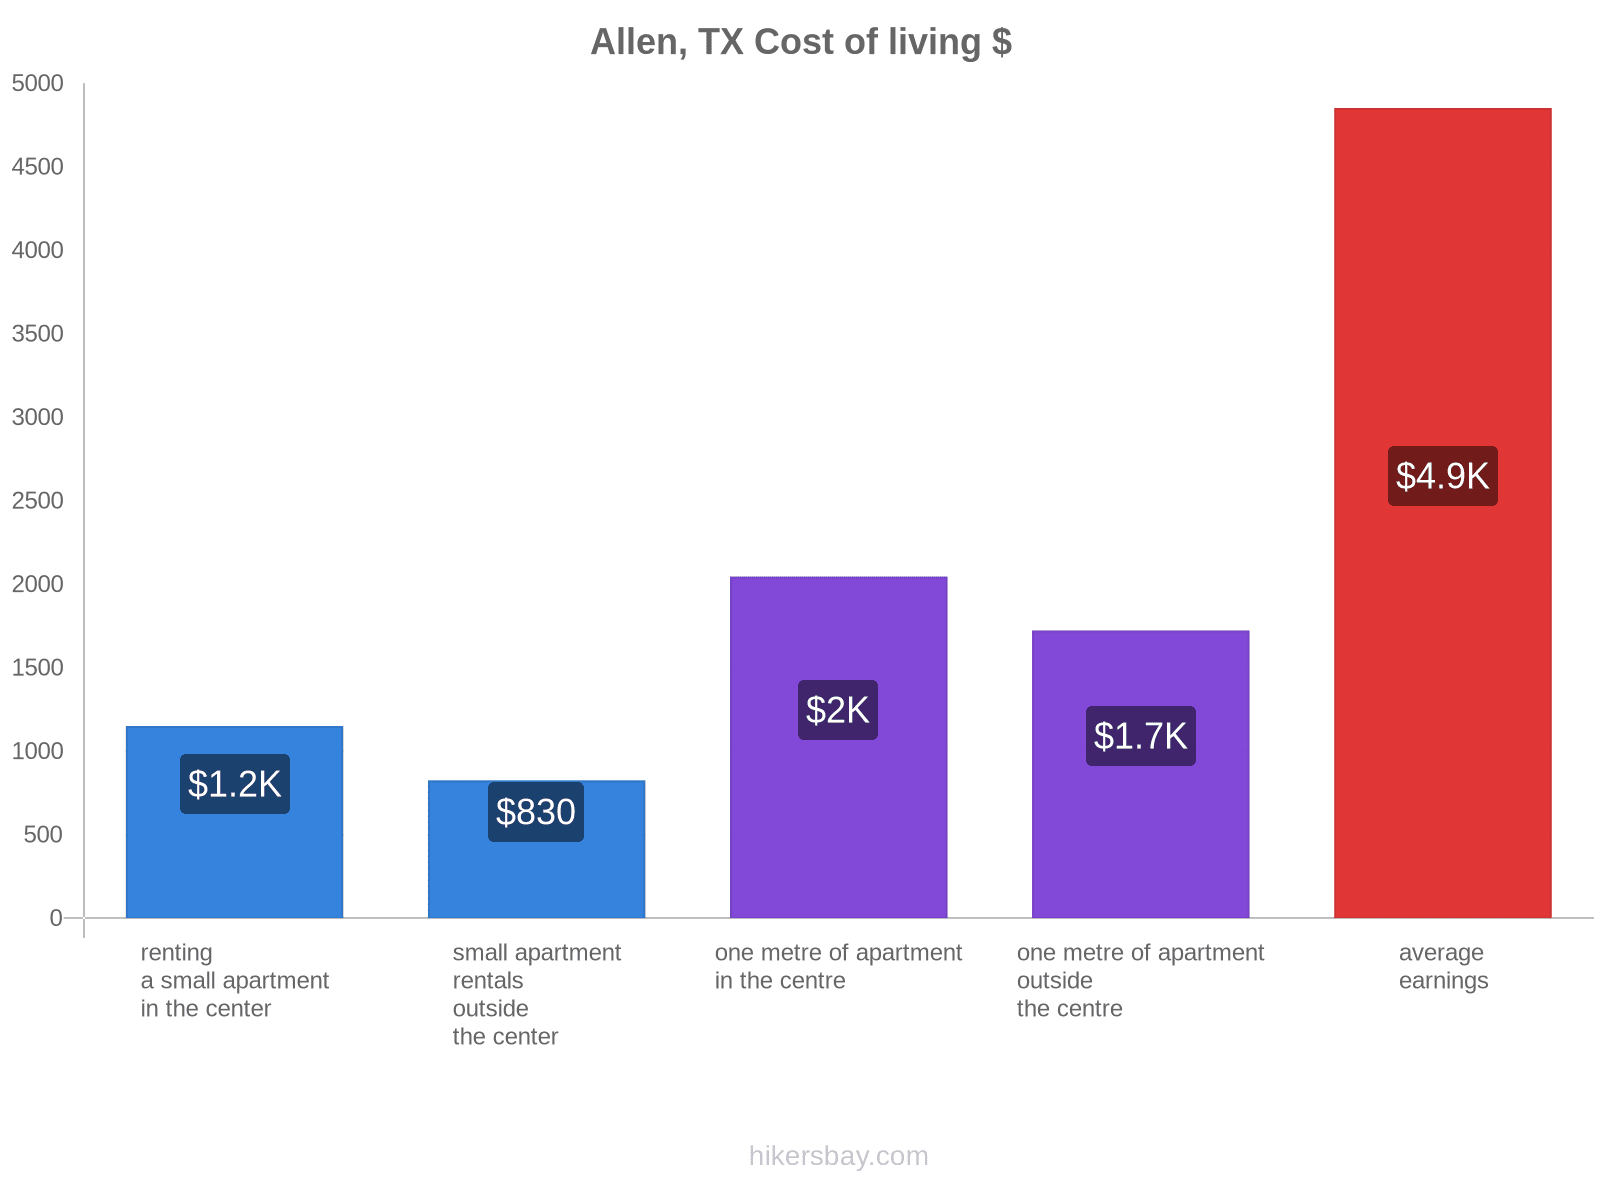 Allen, TX cost of living hikersbay.com